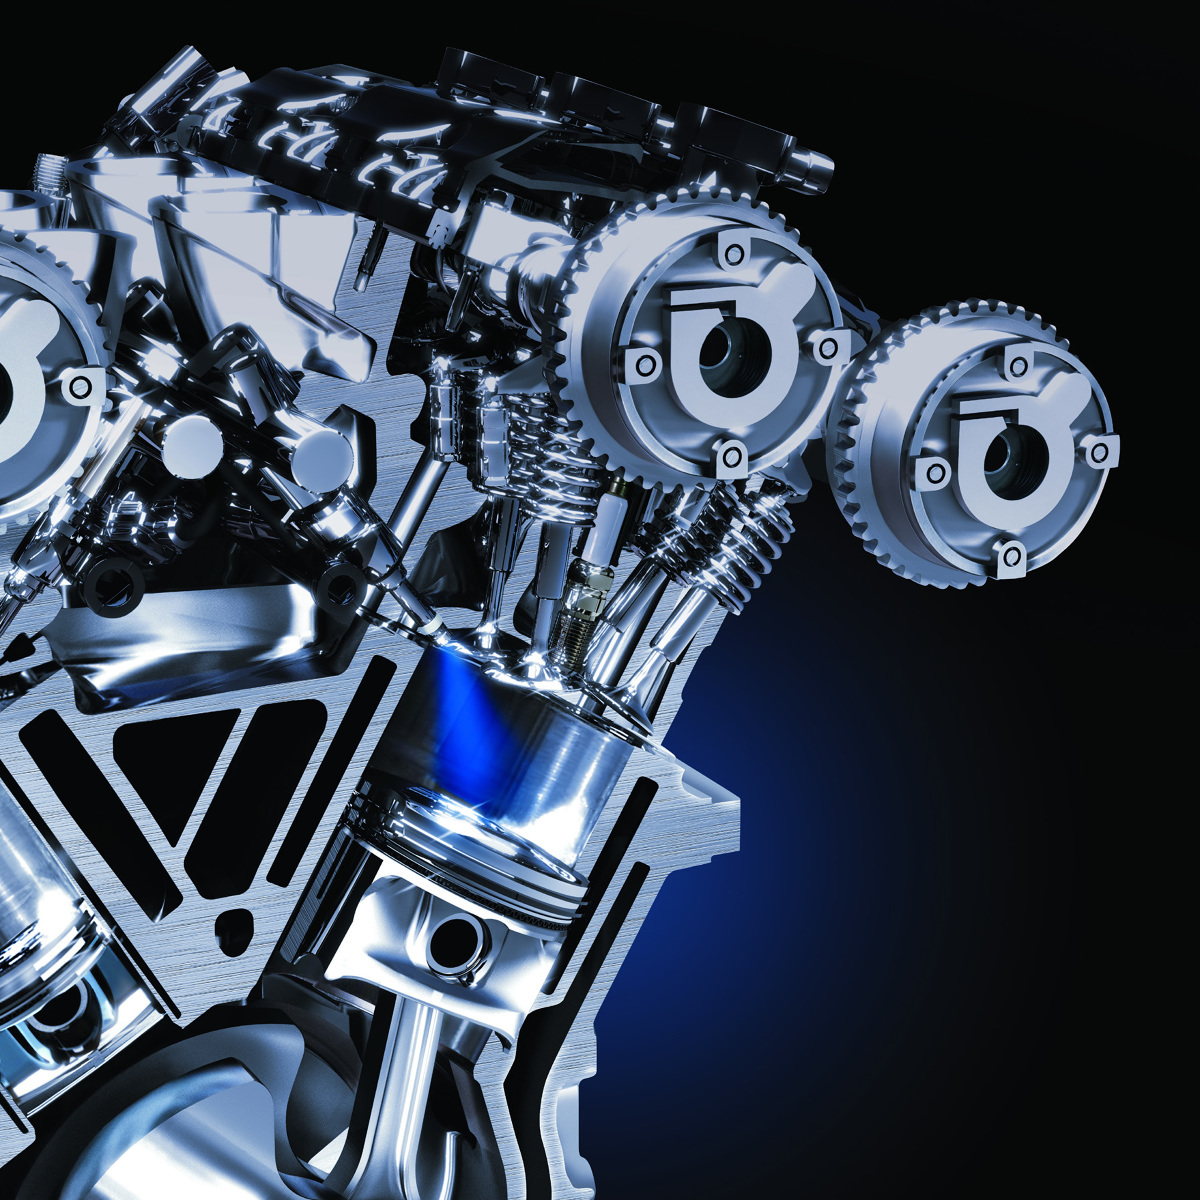 Gdi двигатель что это такое: Что такое система GDI двигателя автомобиля и как работает